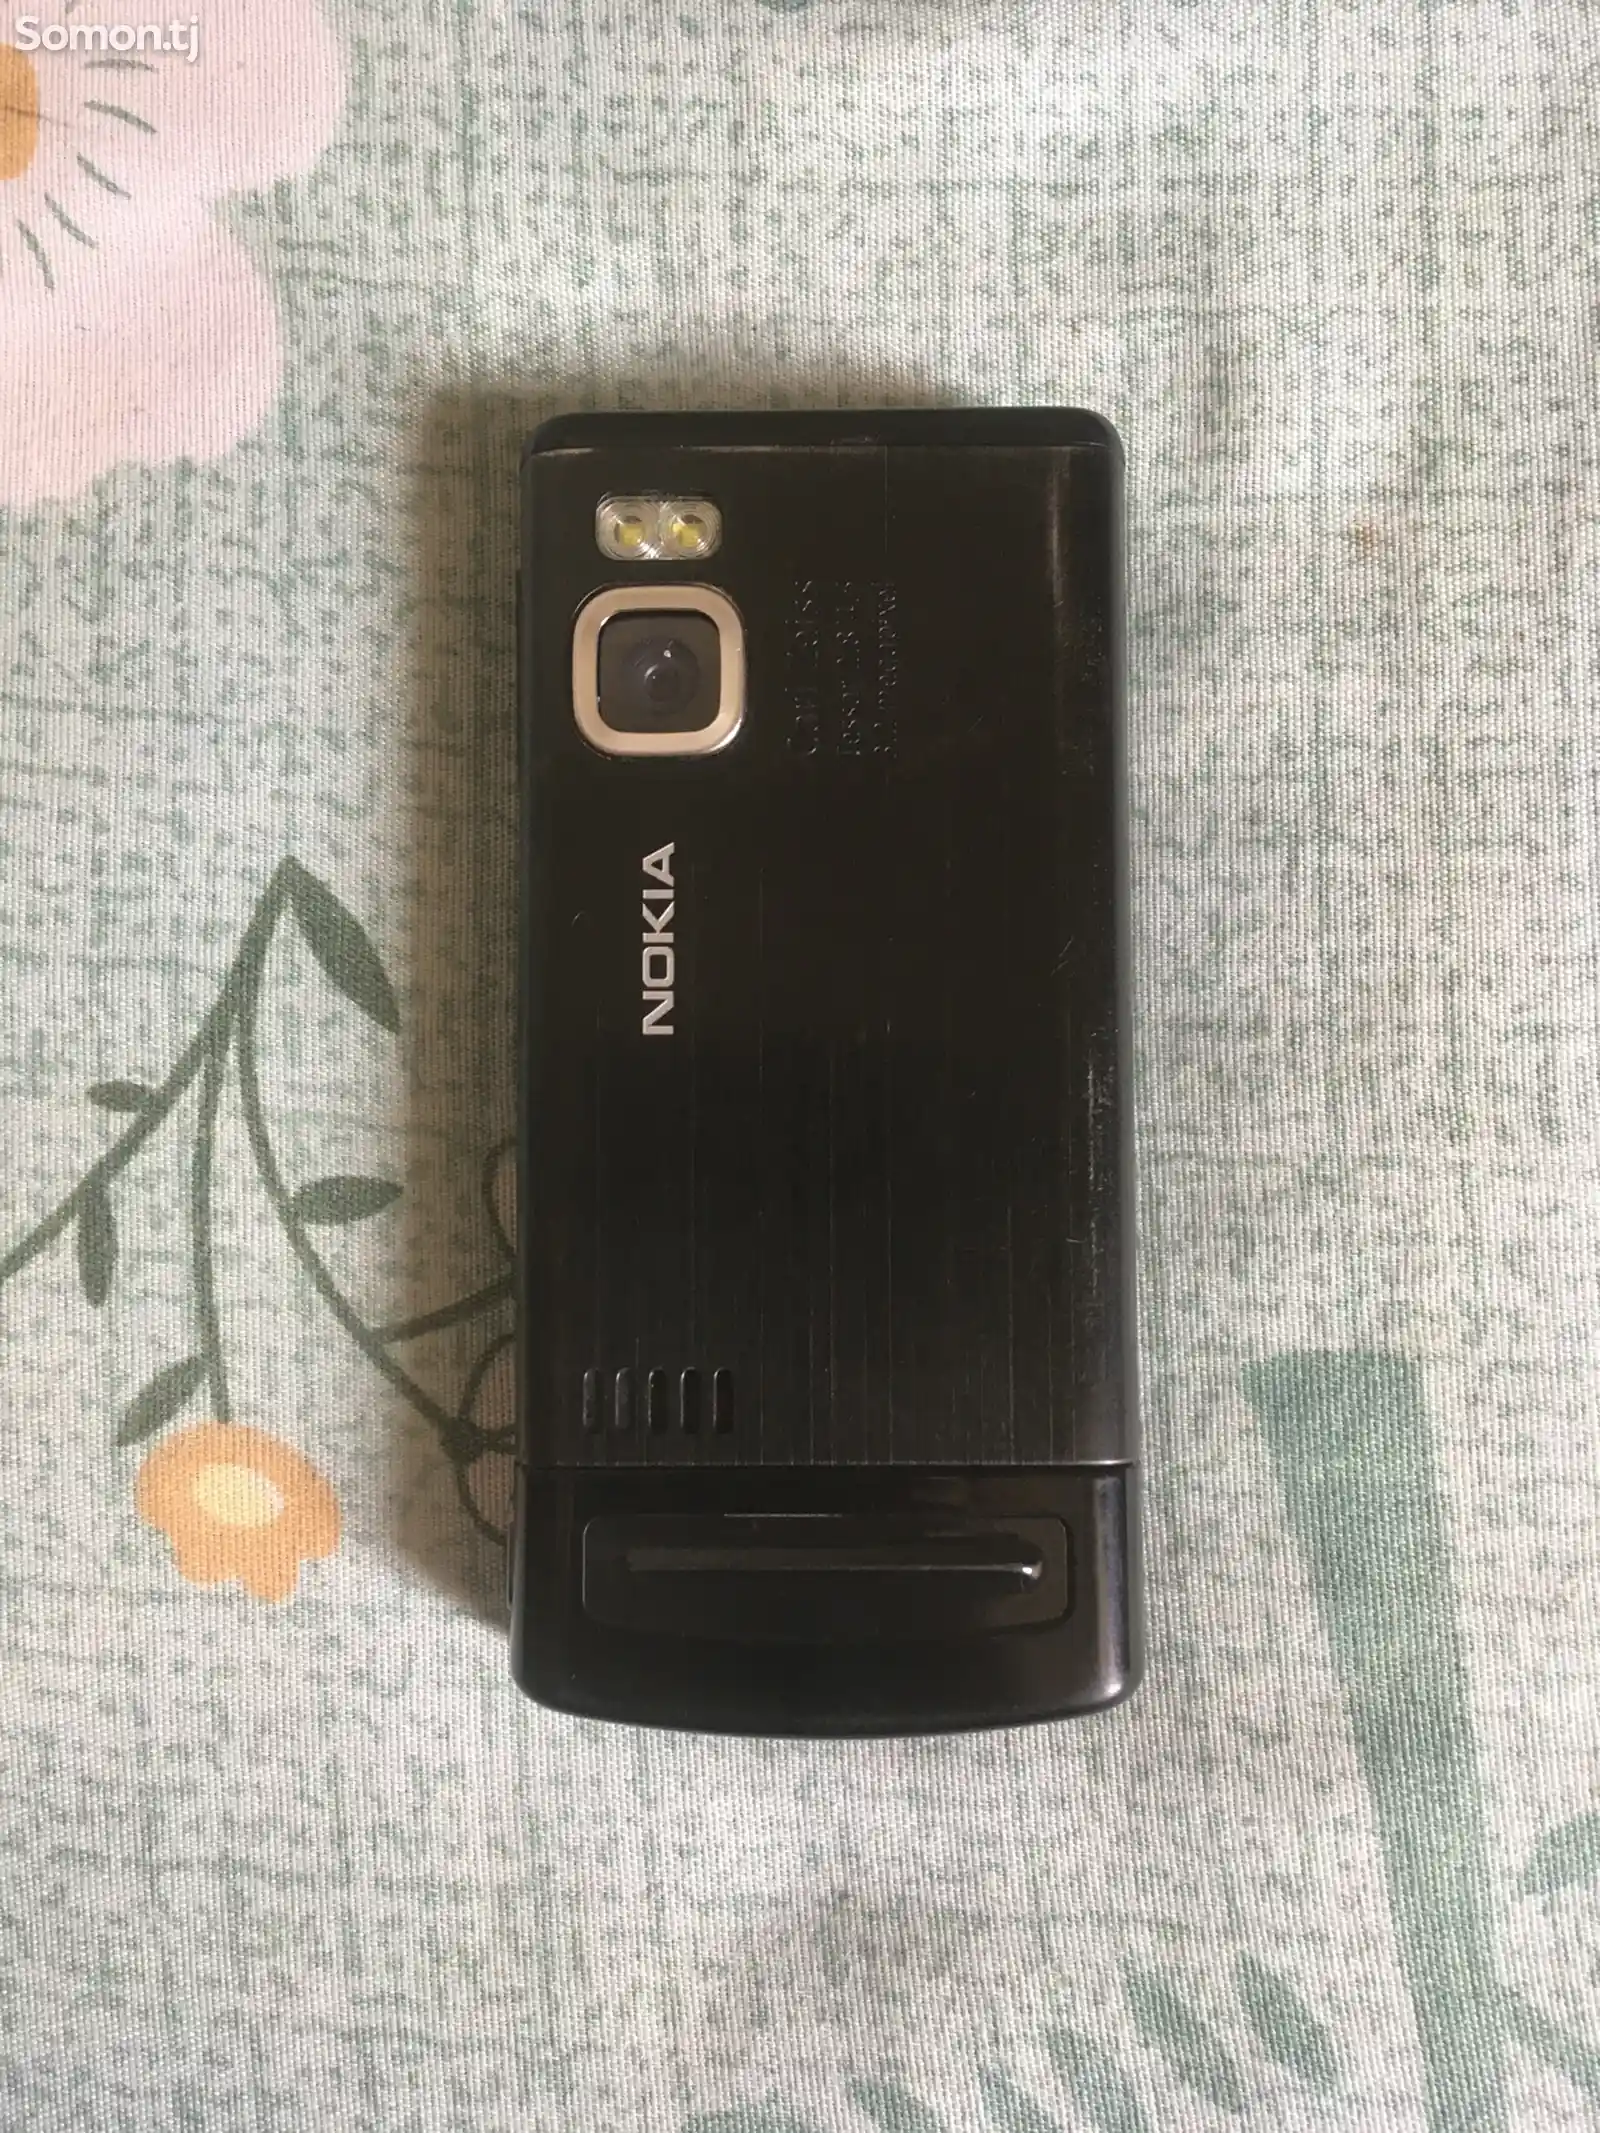 Nokia 6500 slider-2